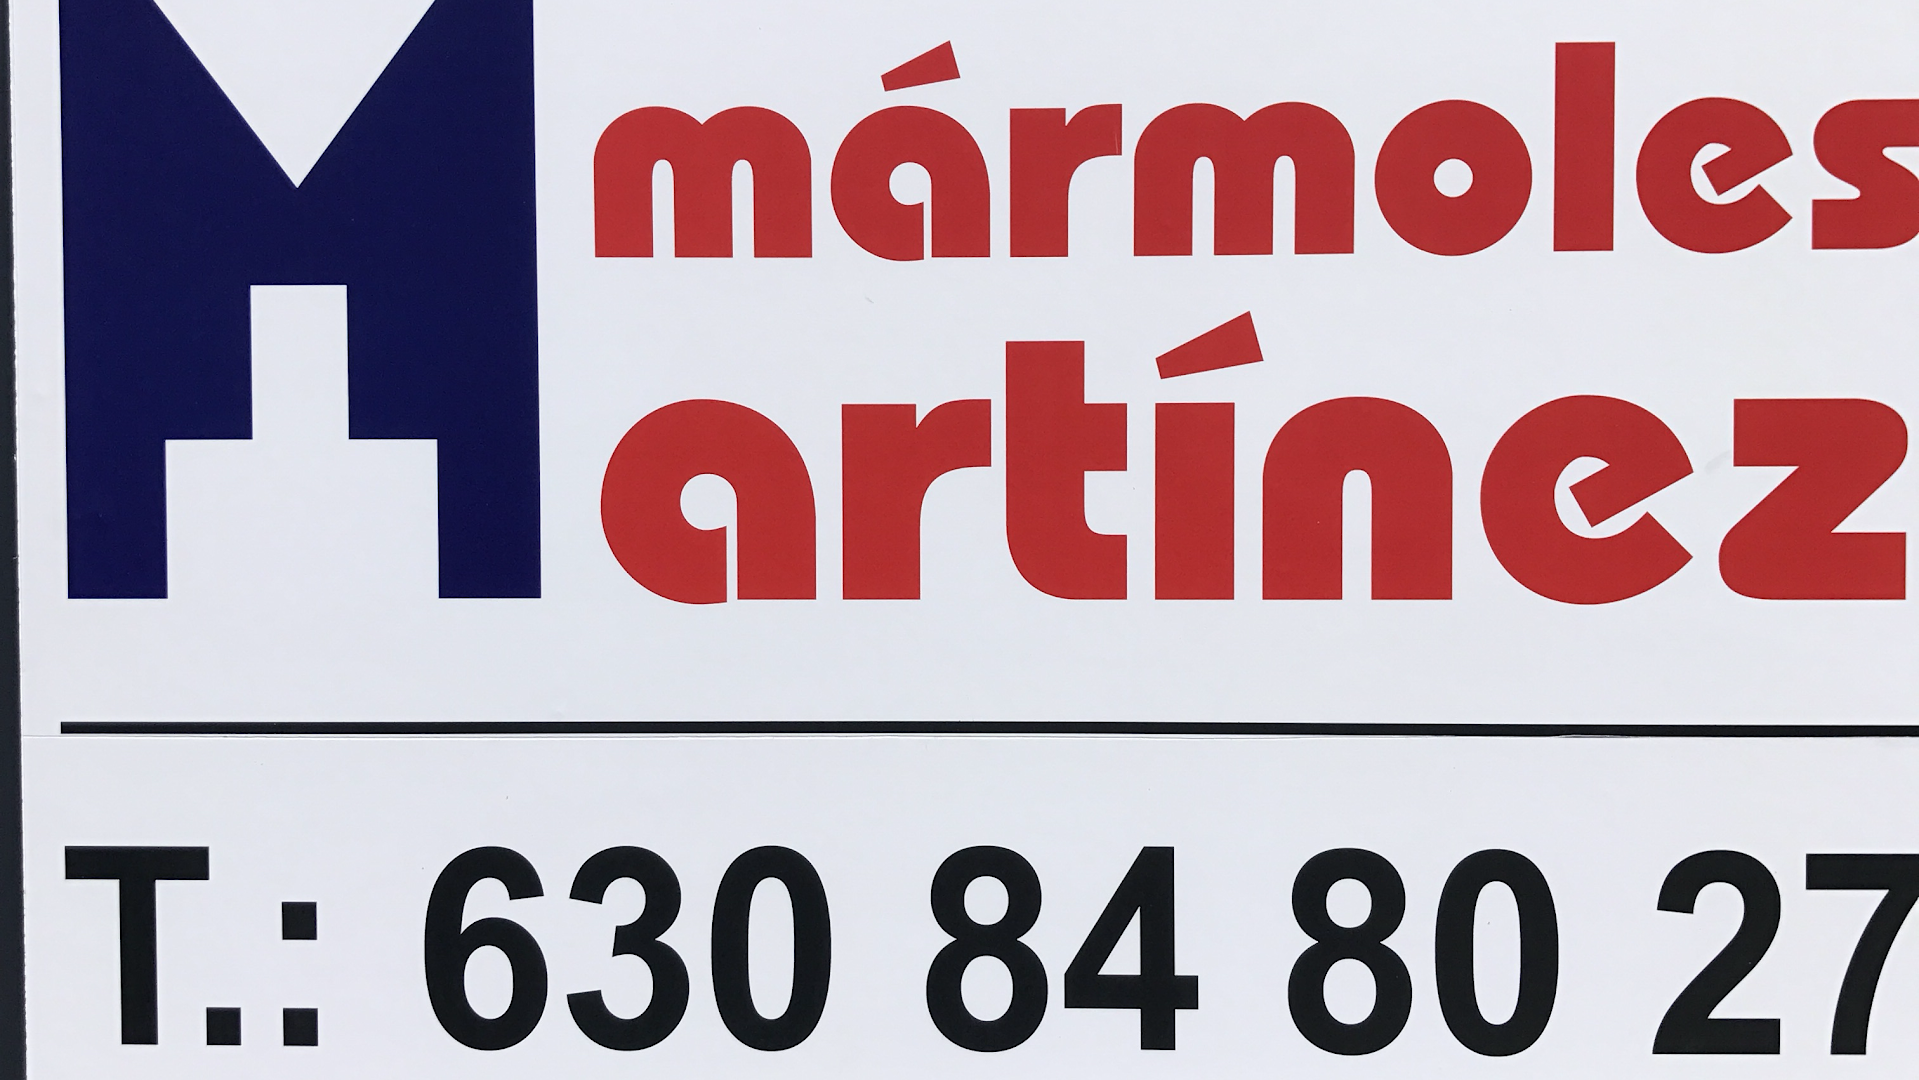 Mármoles Martínez